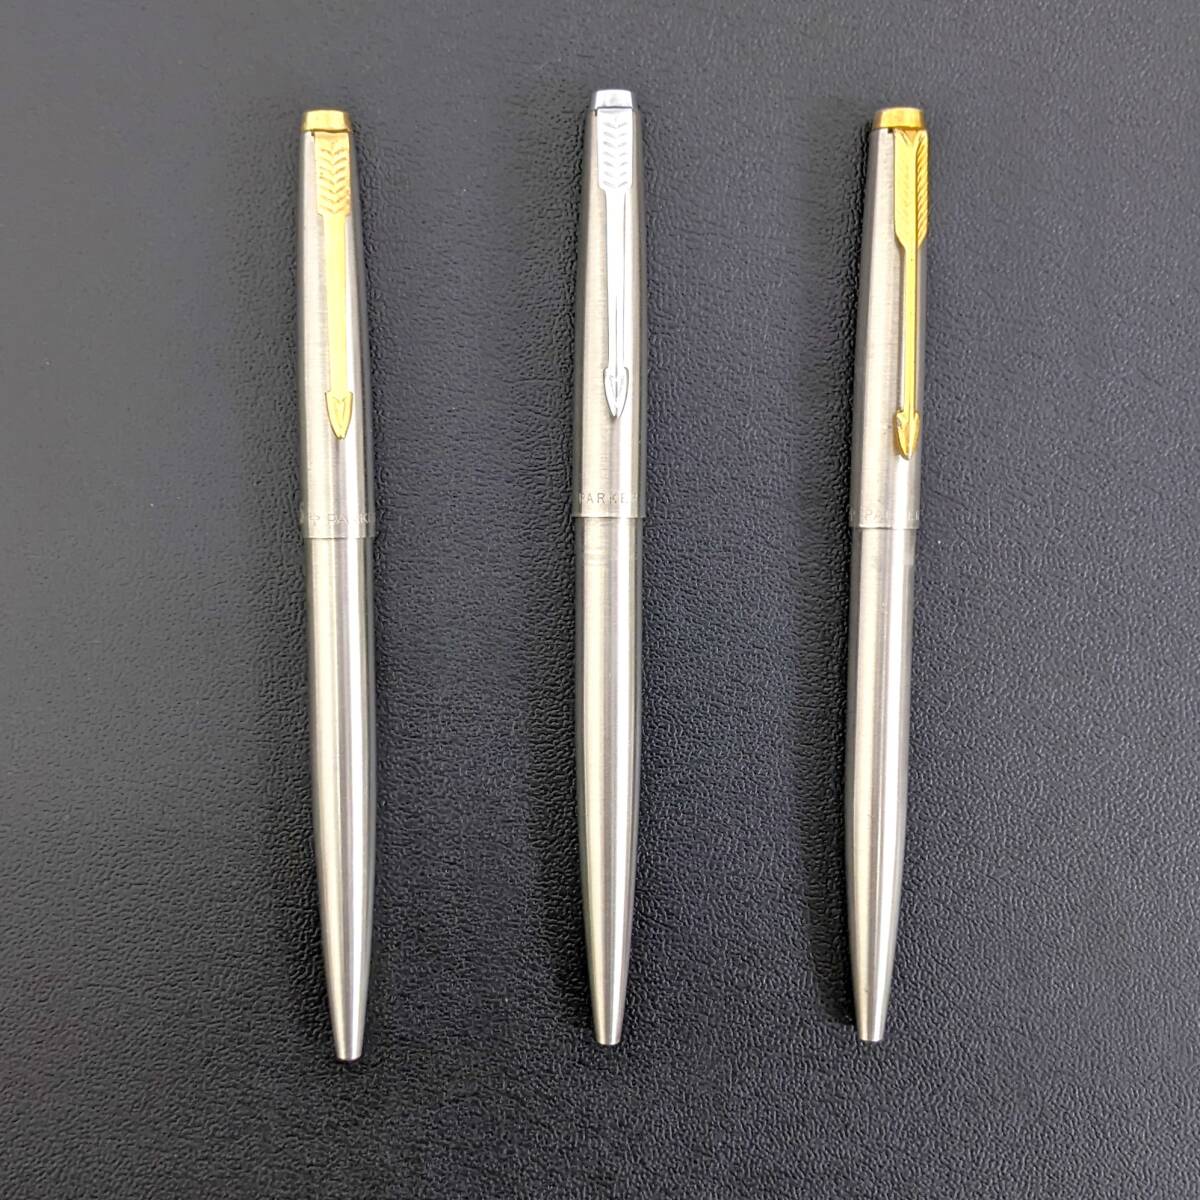 【5368】PARKER パーカー ボールペン ノック式 筆記用具 シルバーカラー ゴールドカラー イギリス ブランド ビジネス クラシック_画像2